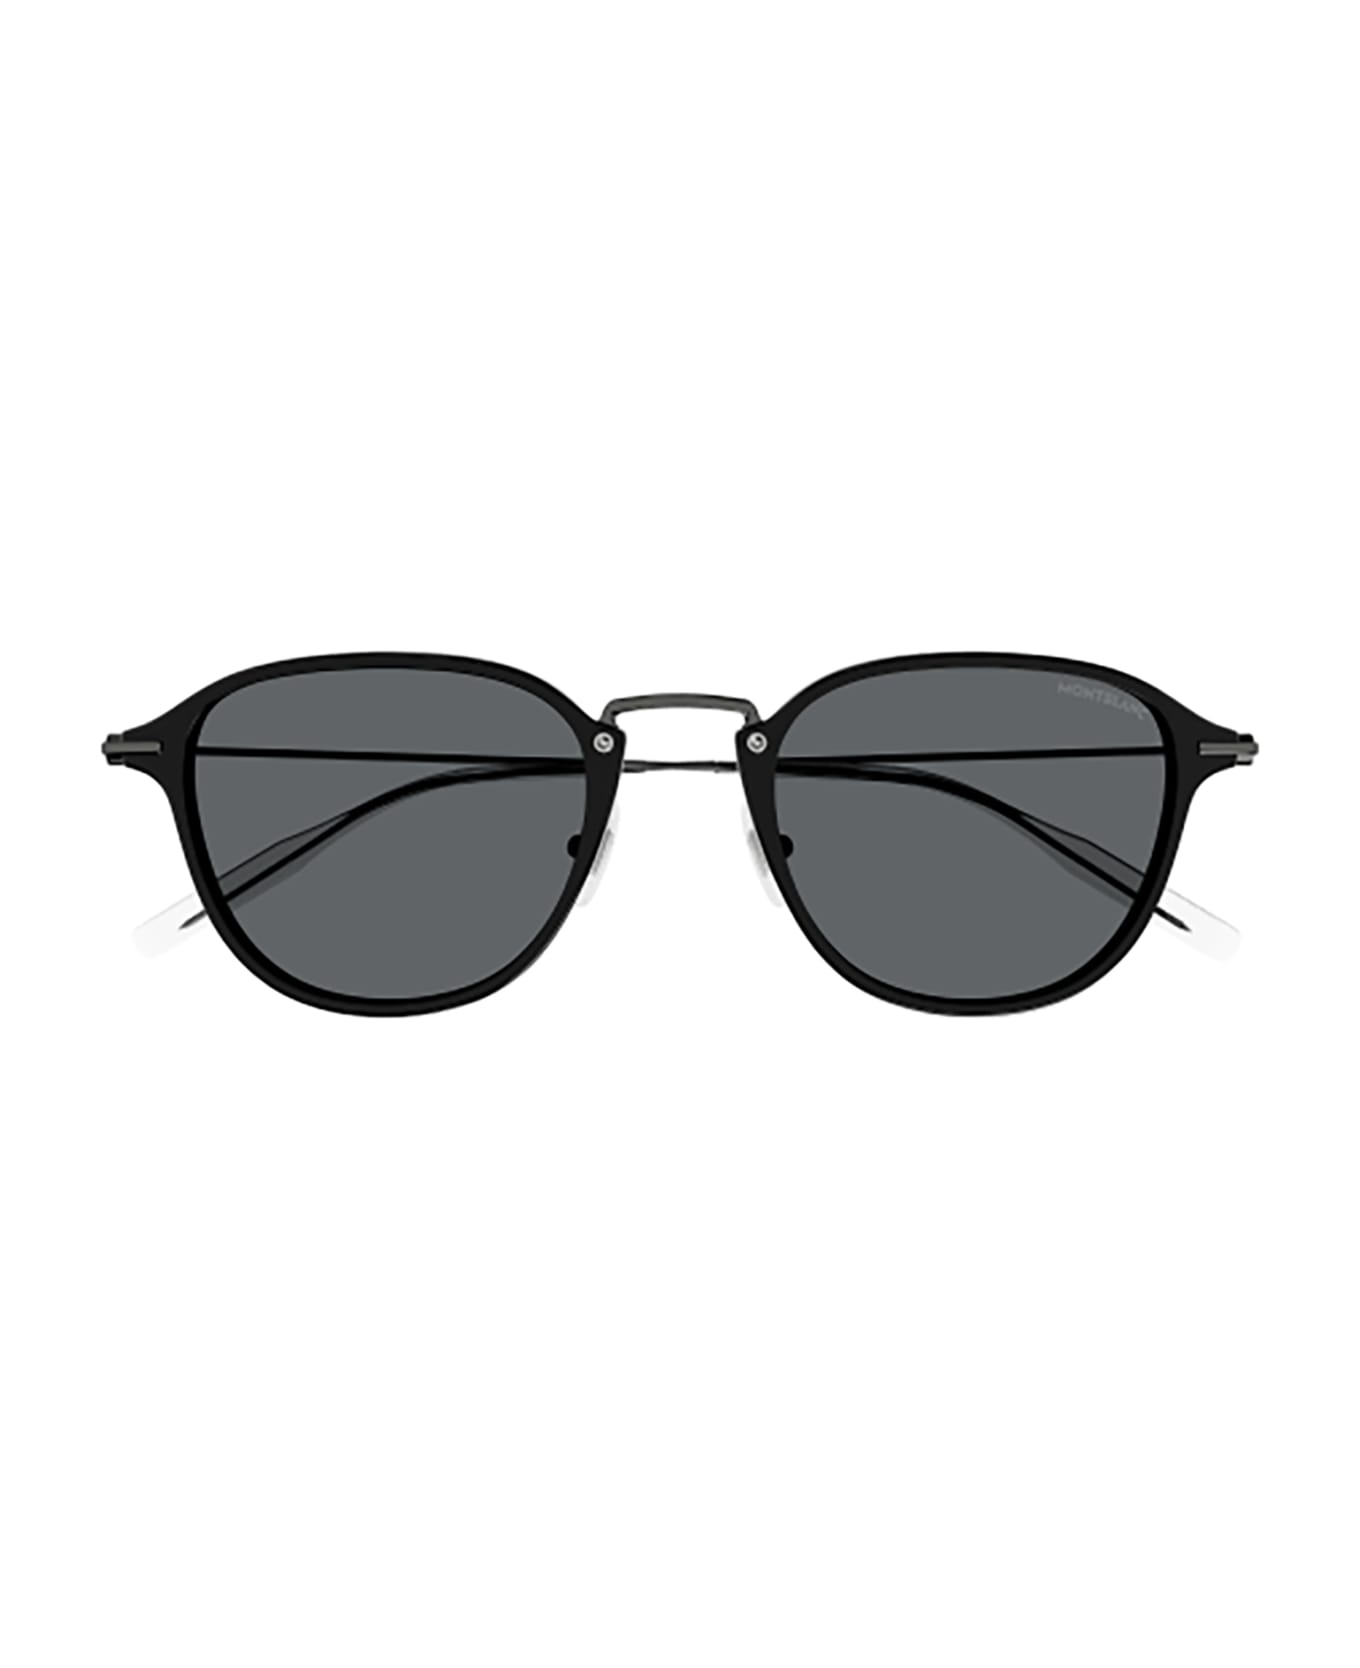 Montblanc MB0155S Sunglasses - Black Ruthenium Grey